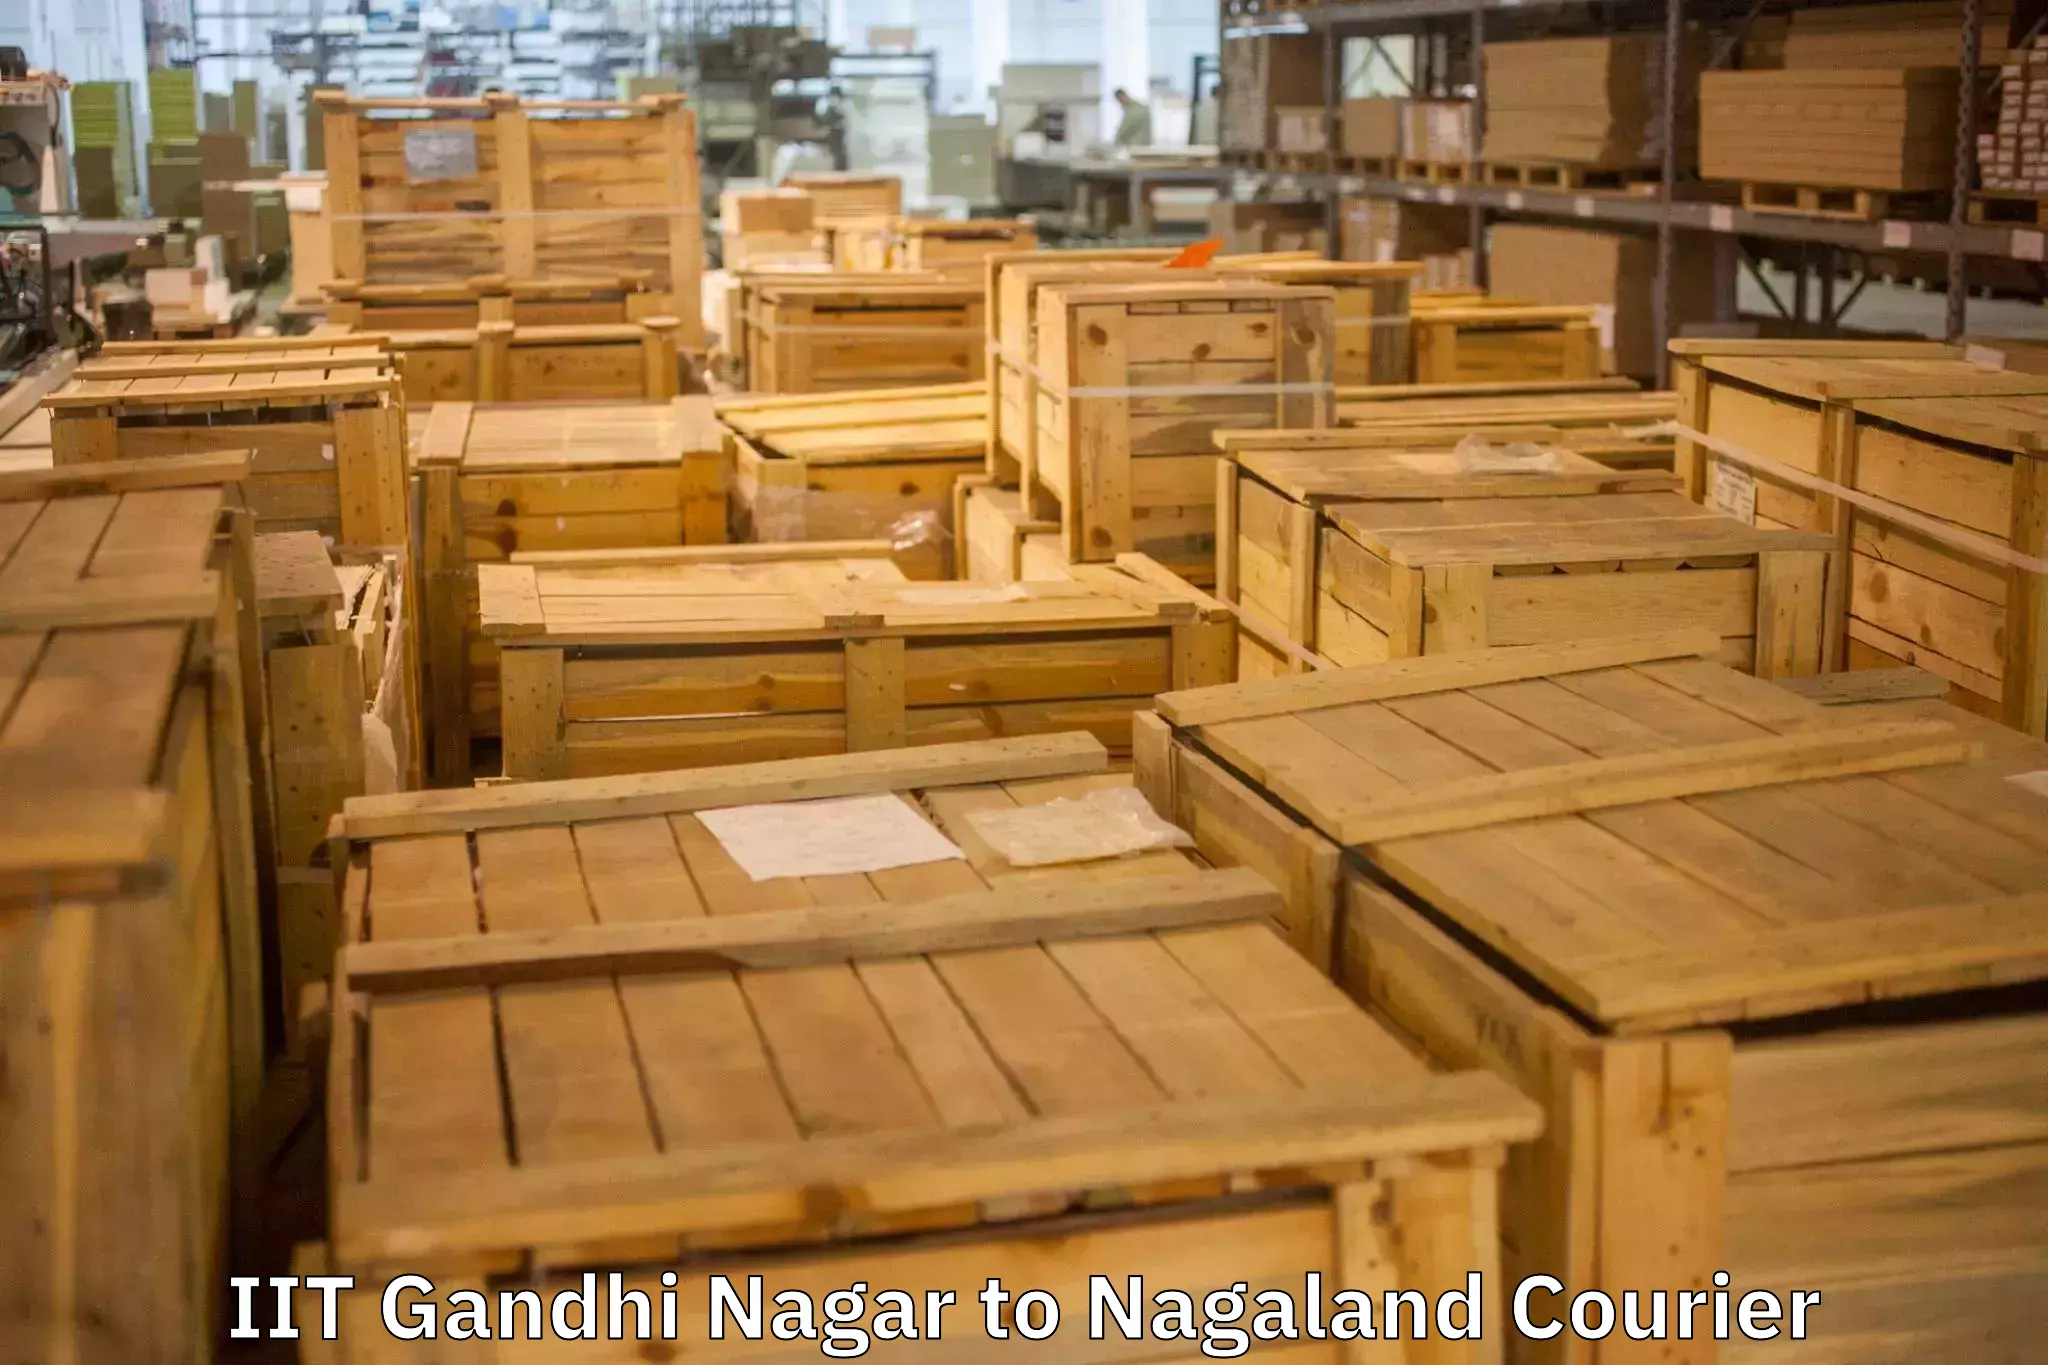 Nationwide furniture movers IIT Gandhi Nagar to Wokha